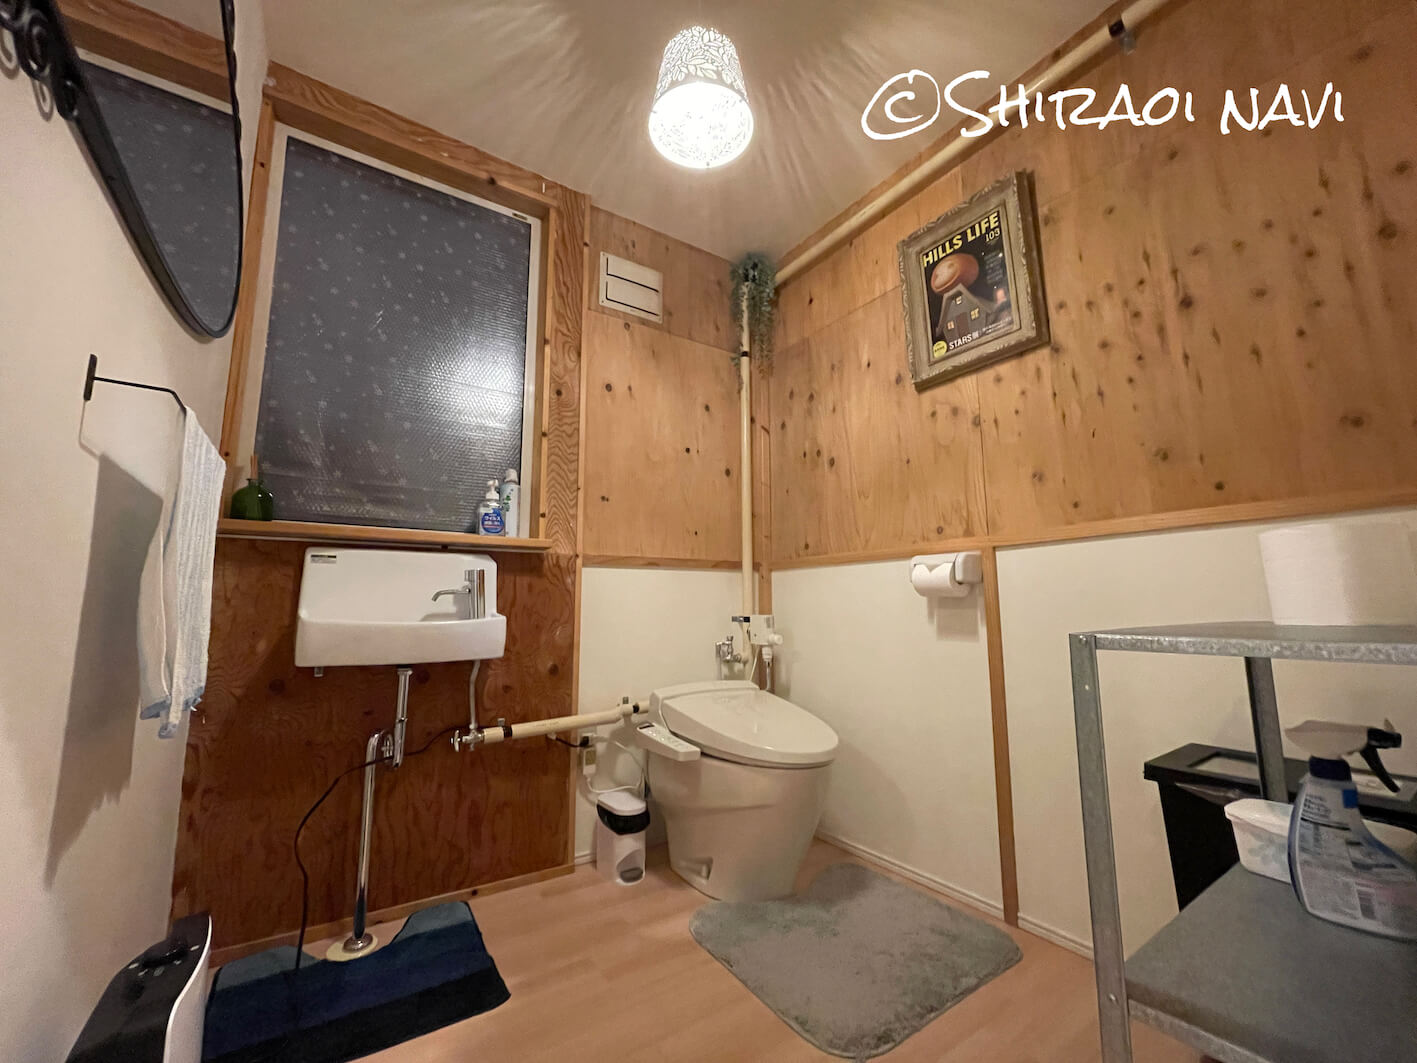 北海道白老町の温泉一軒家貸切民泊47ハウスのトイレ